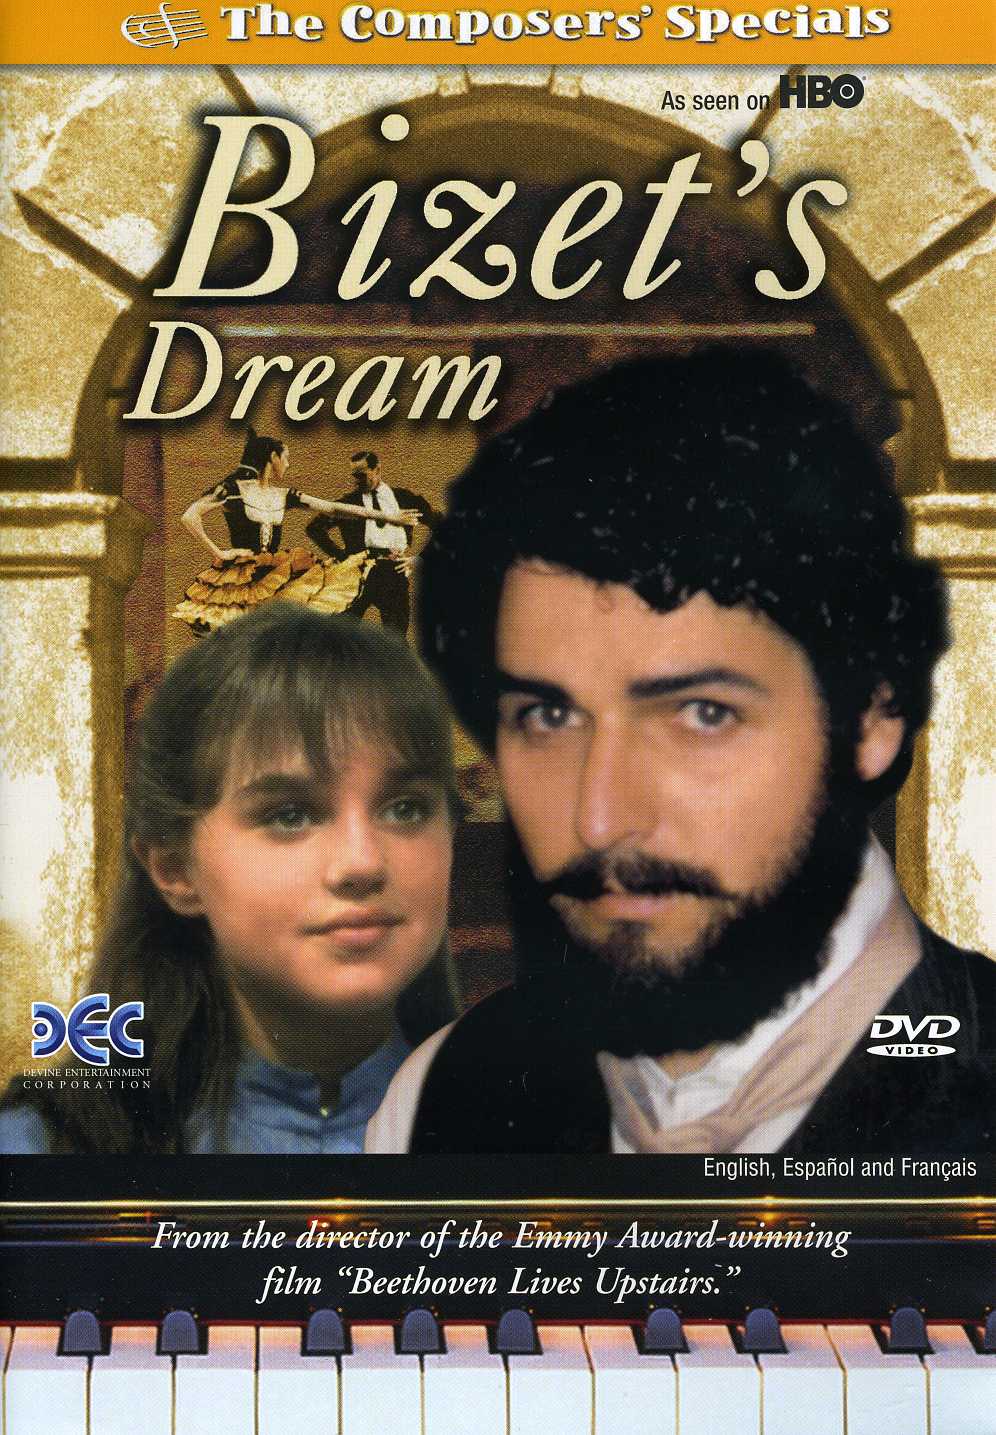 BIZET'S DREAM